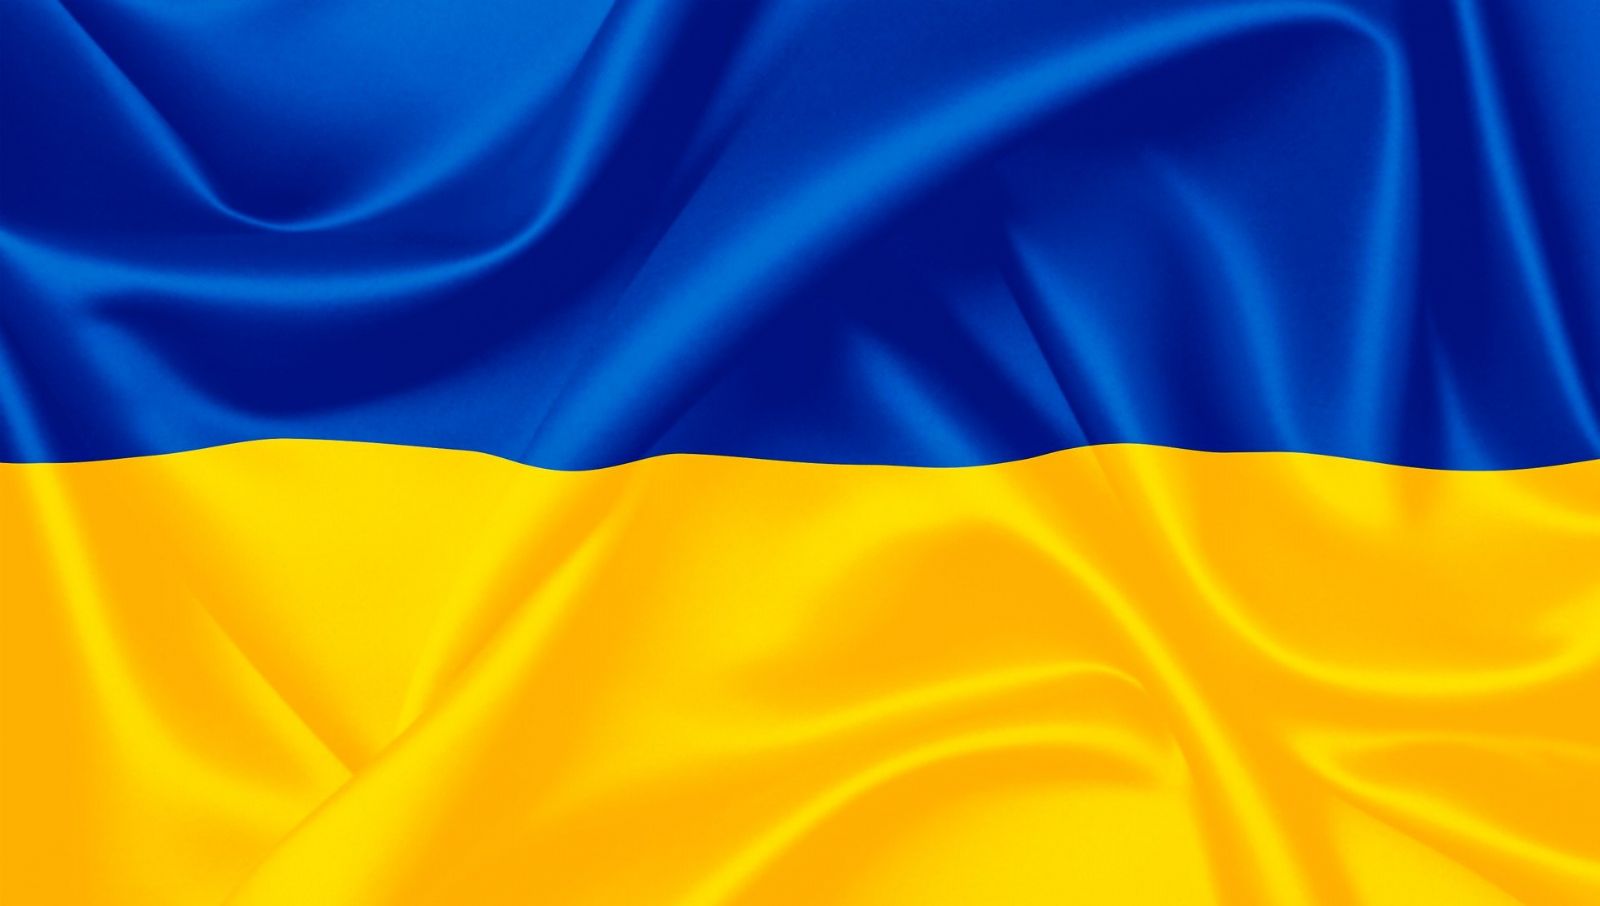 Dobrovolníky, kteří ve školách pomáhají ukrajinským dětem, město finančně odmění